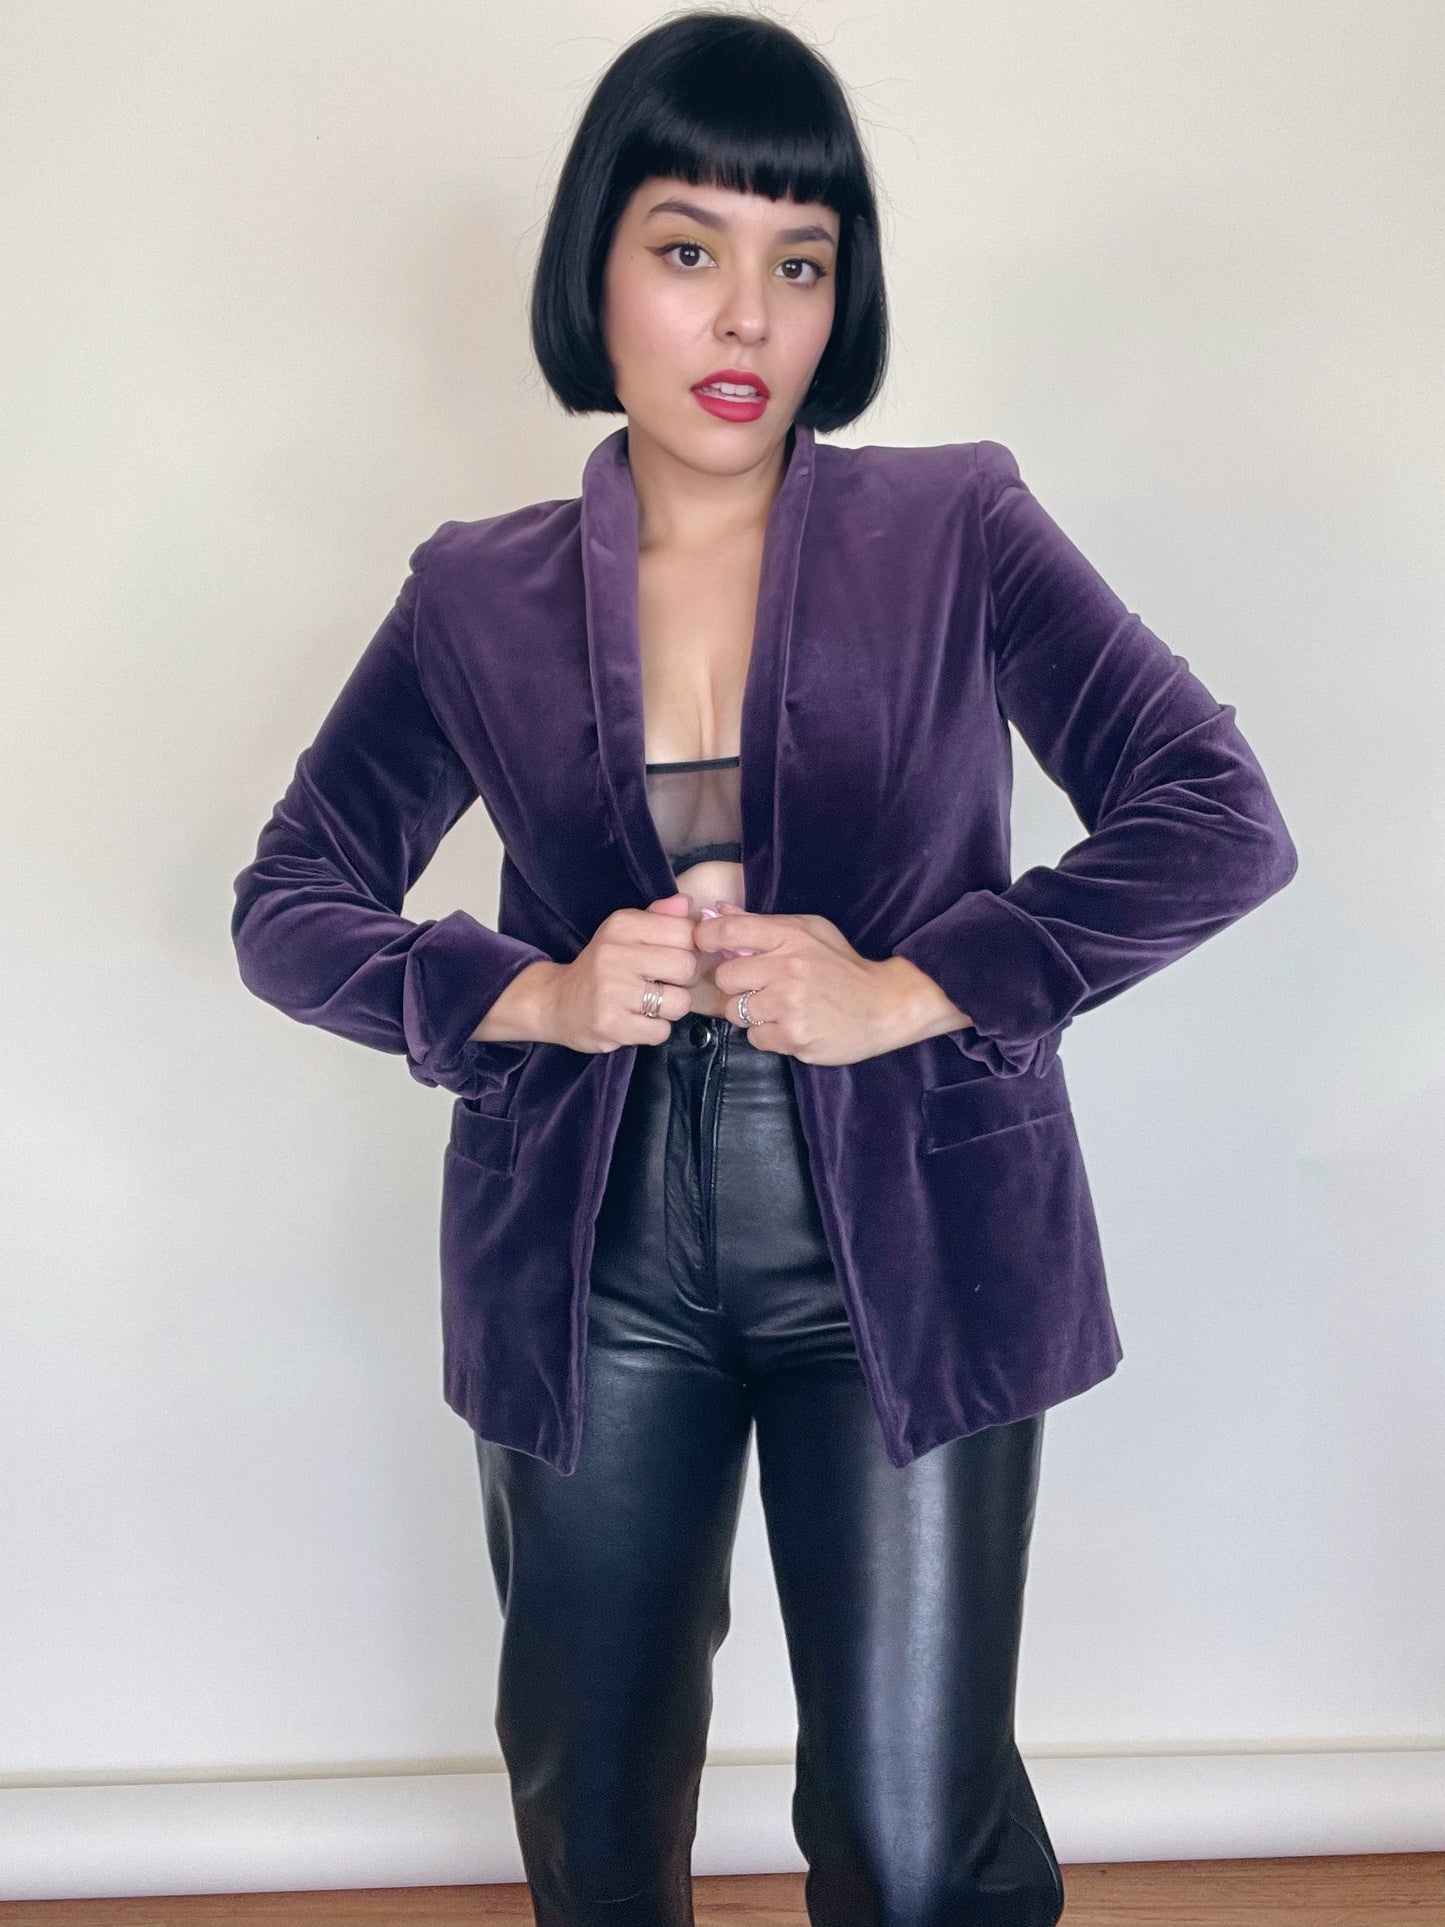 Vintage 70s 80s "I. Magnin" Grape Plum Purple Velvet Jacket Best Fits Sizes XS-M